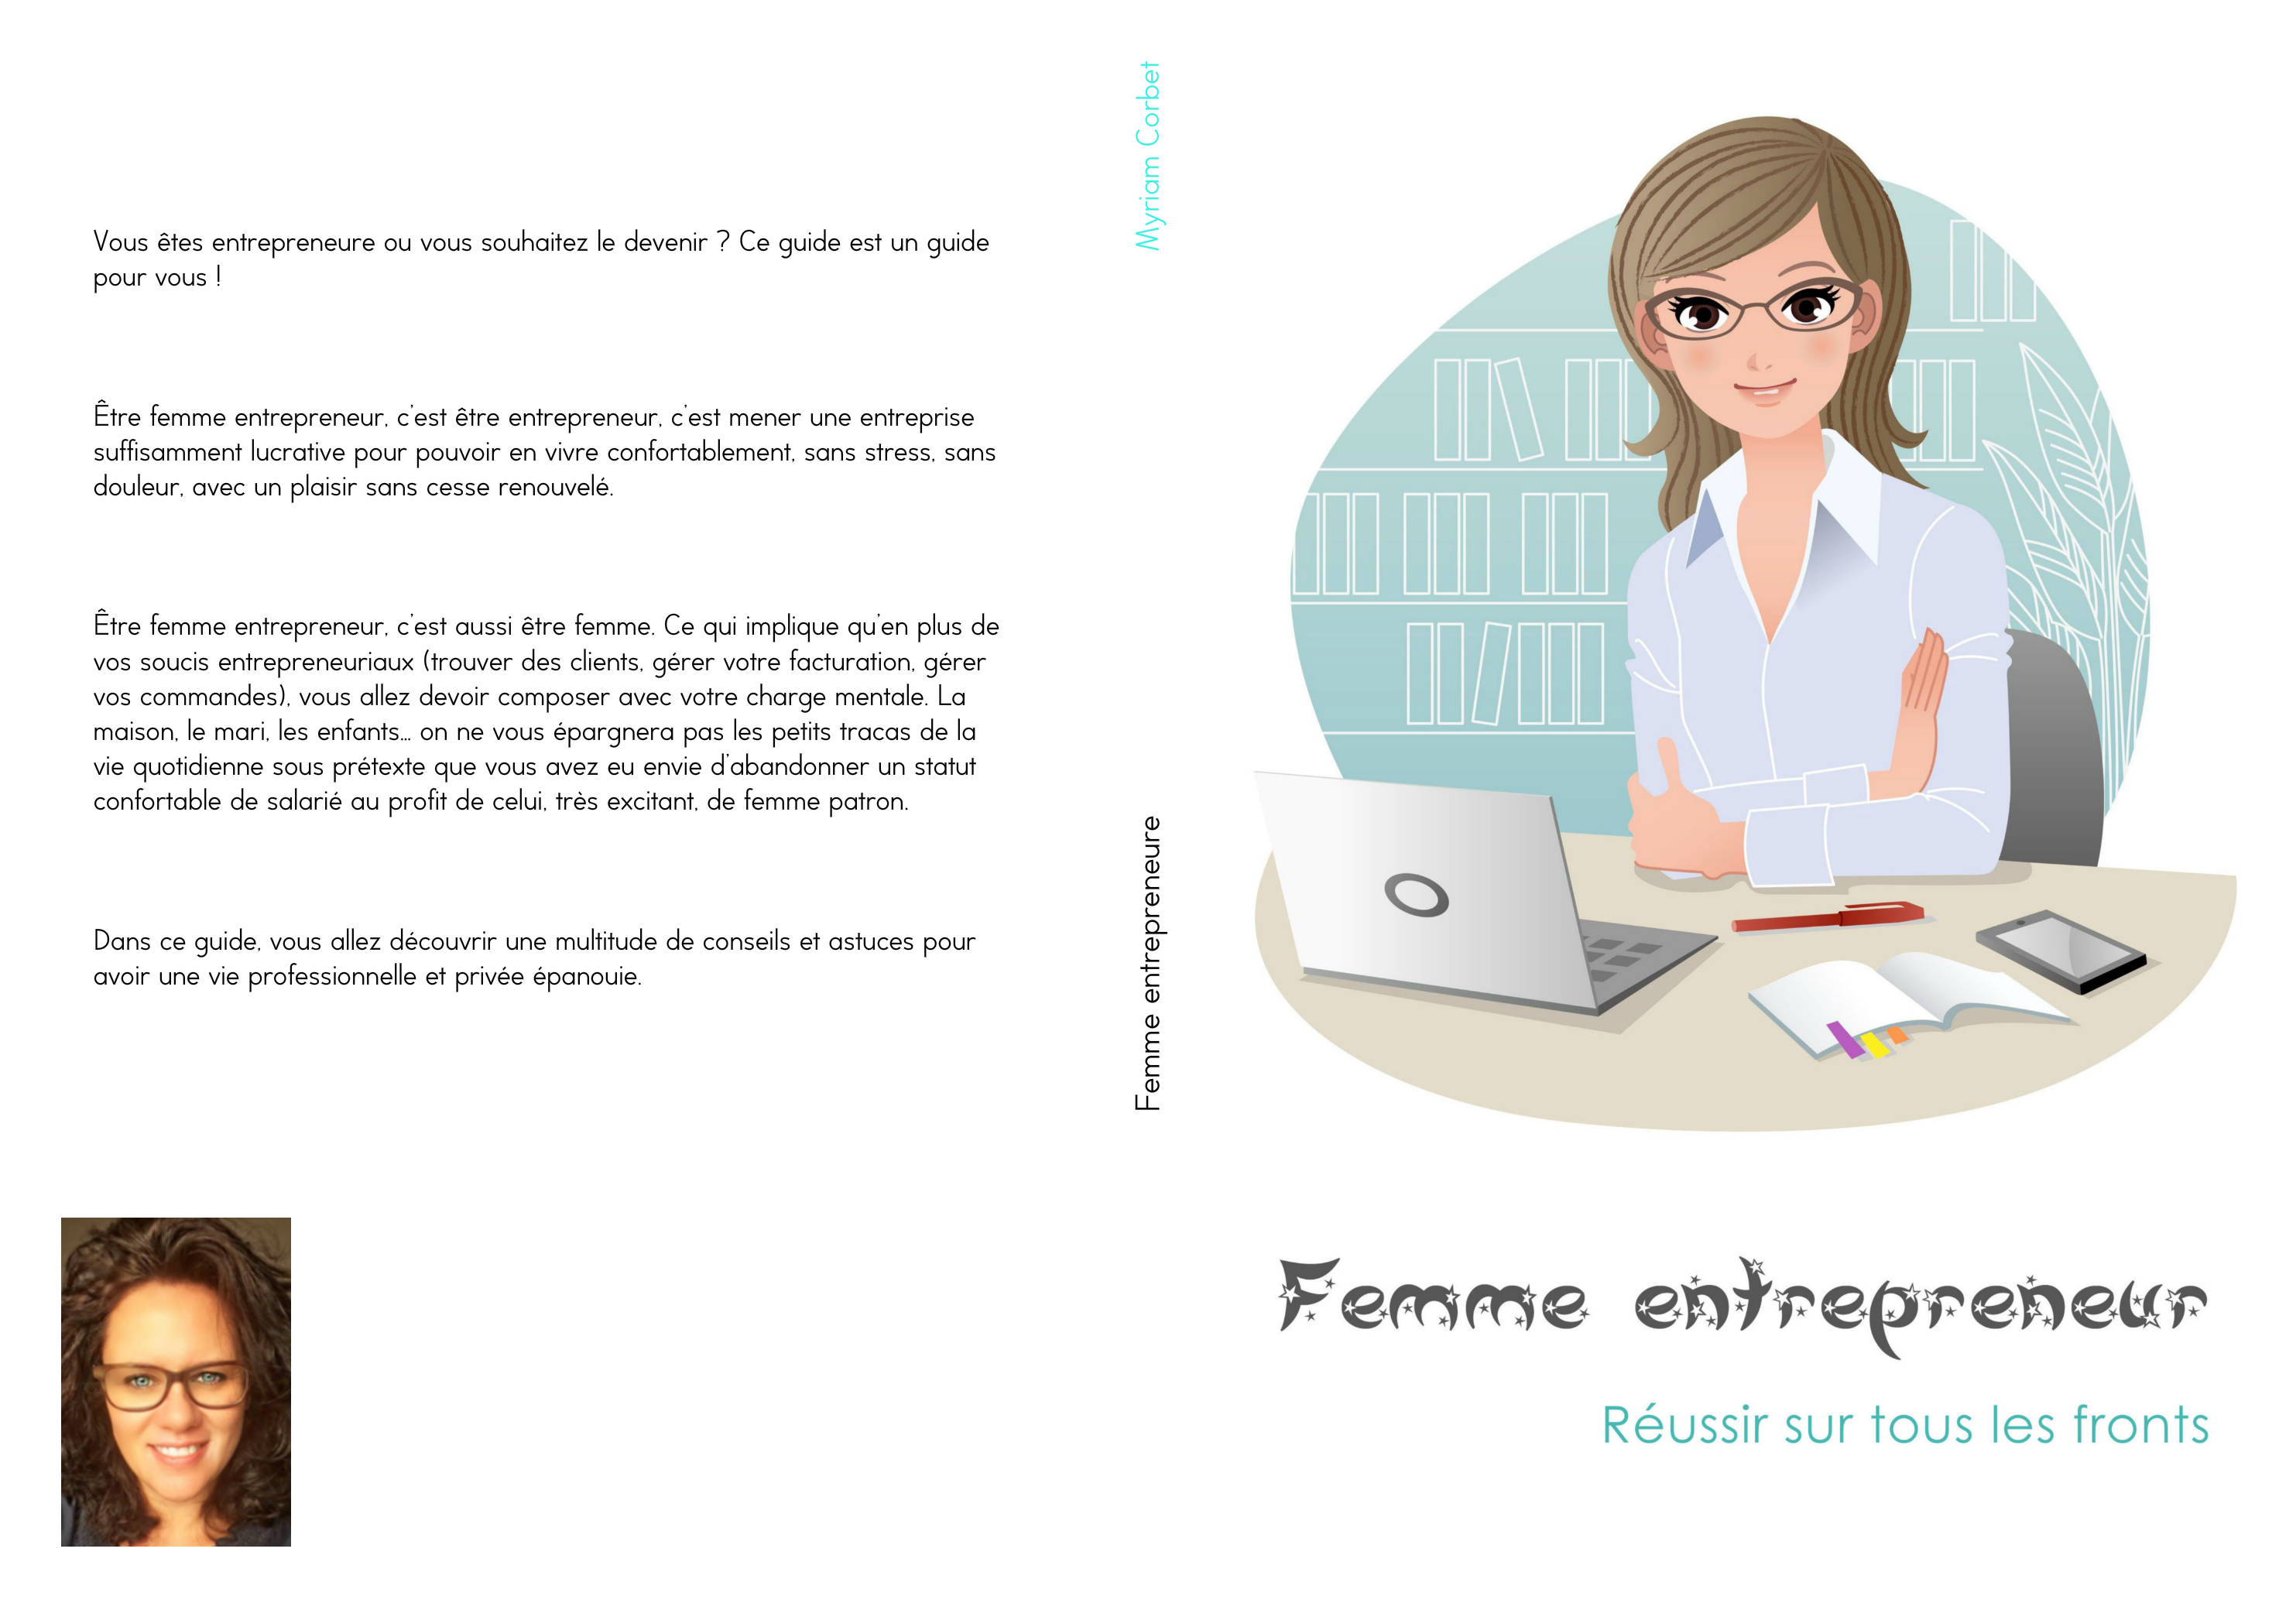 Achetez le guide Femme entrepreneure 